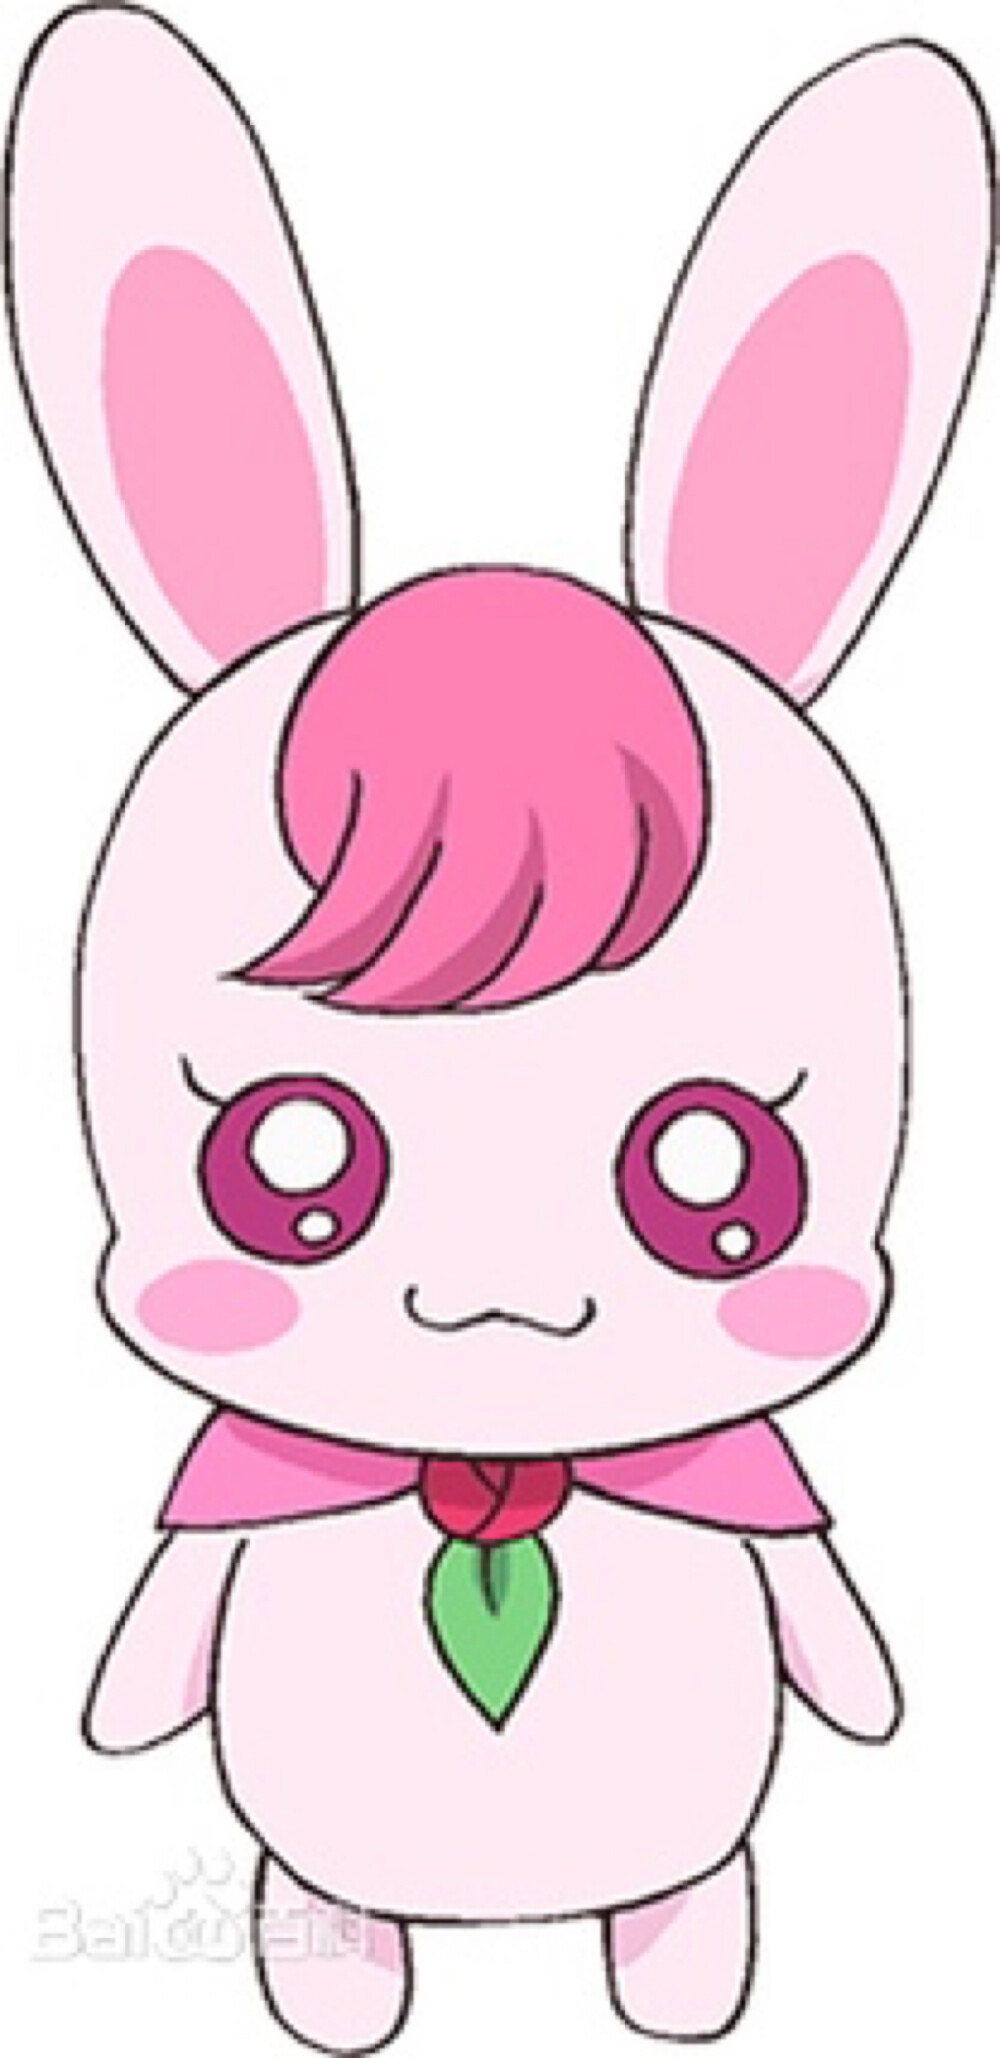 ビリン,rabirin)(暂译)配音:加隈亚衣全身粉红色的兔子型治愈动物精灵